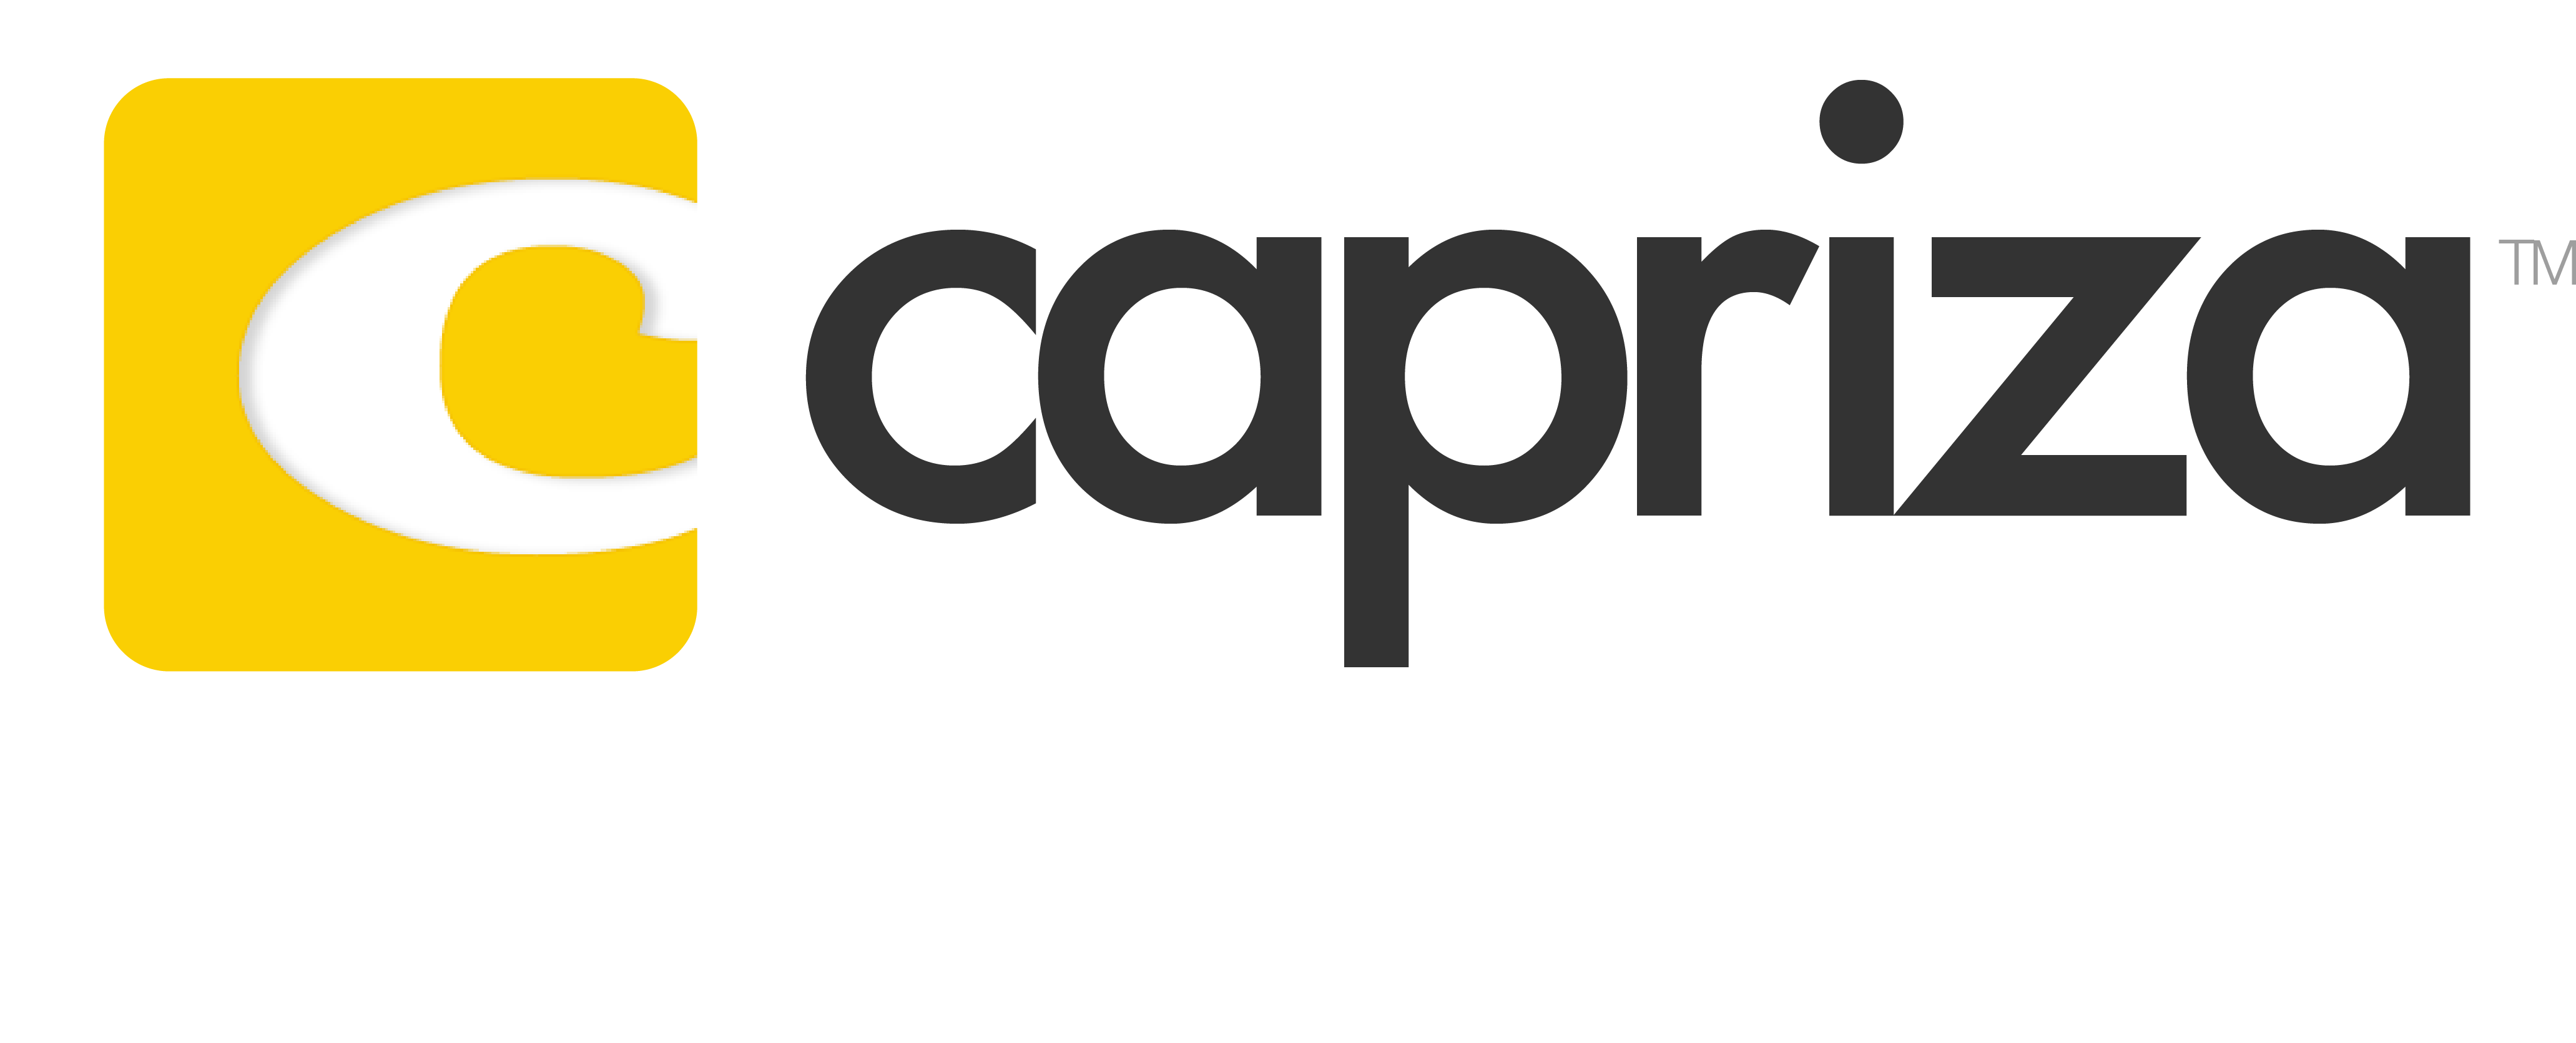 Capriza Logo Vector PNG - 100284